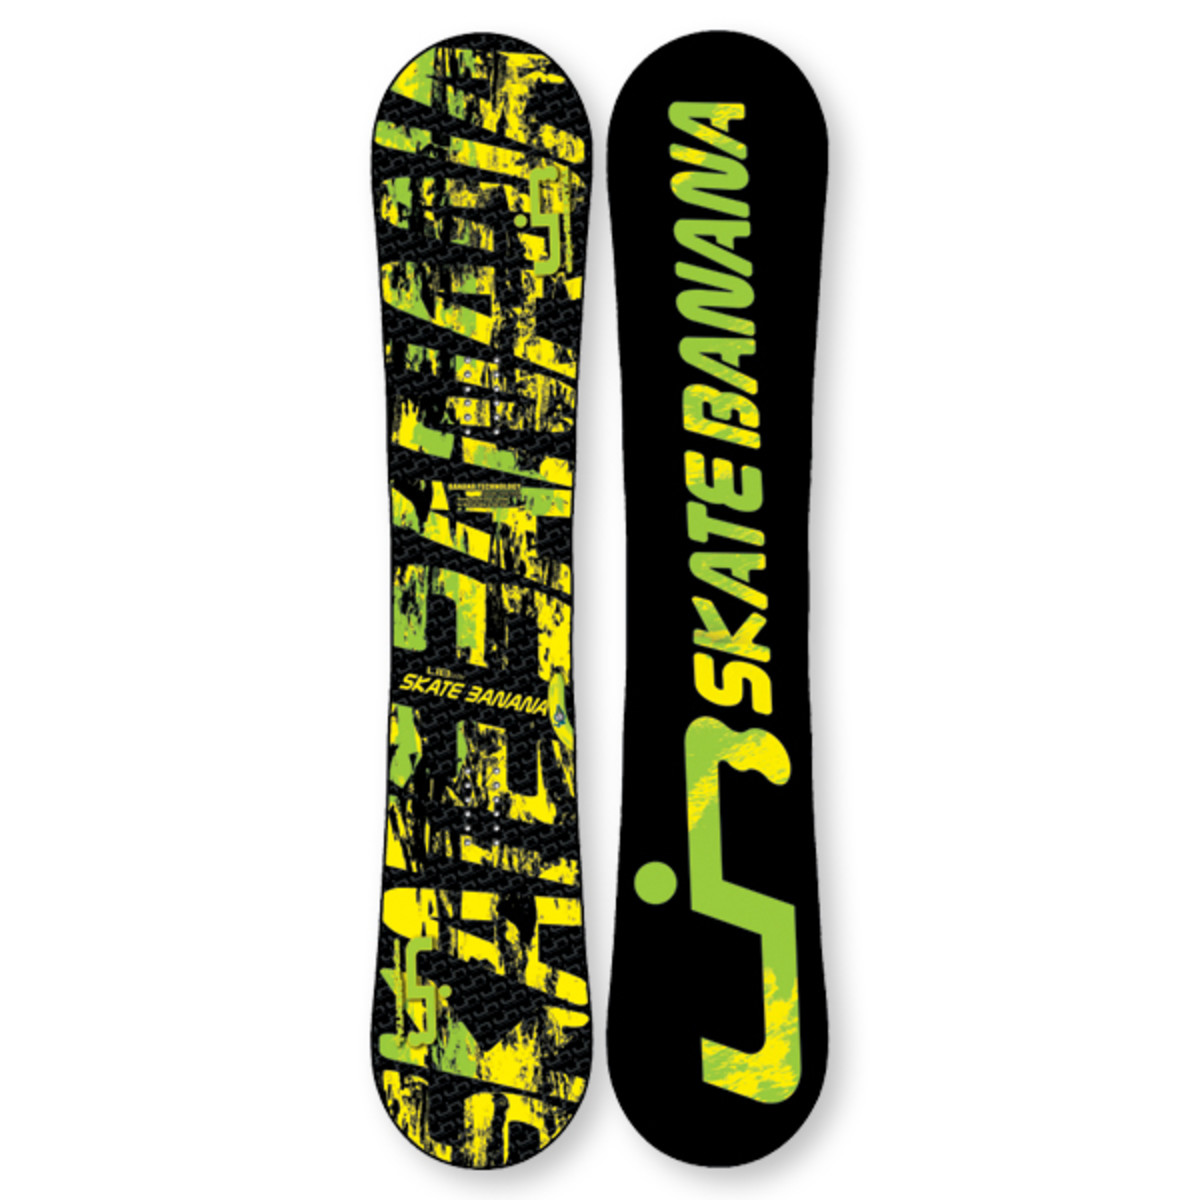 Diplomatie Zachte voeten Mantel LibTech Skate Banana Snowboard - Snowboarder